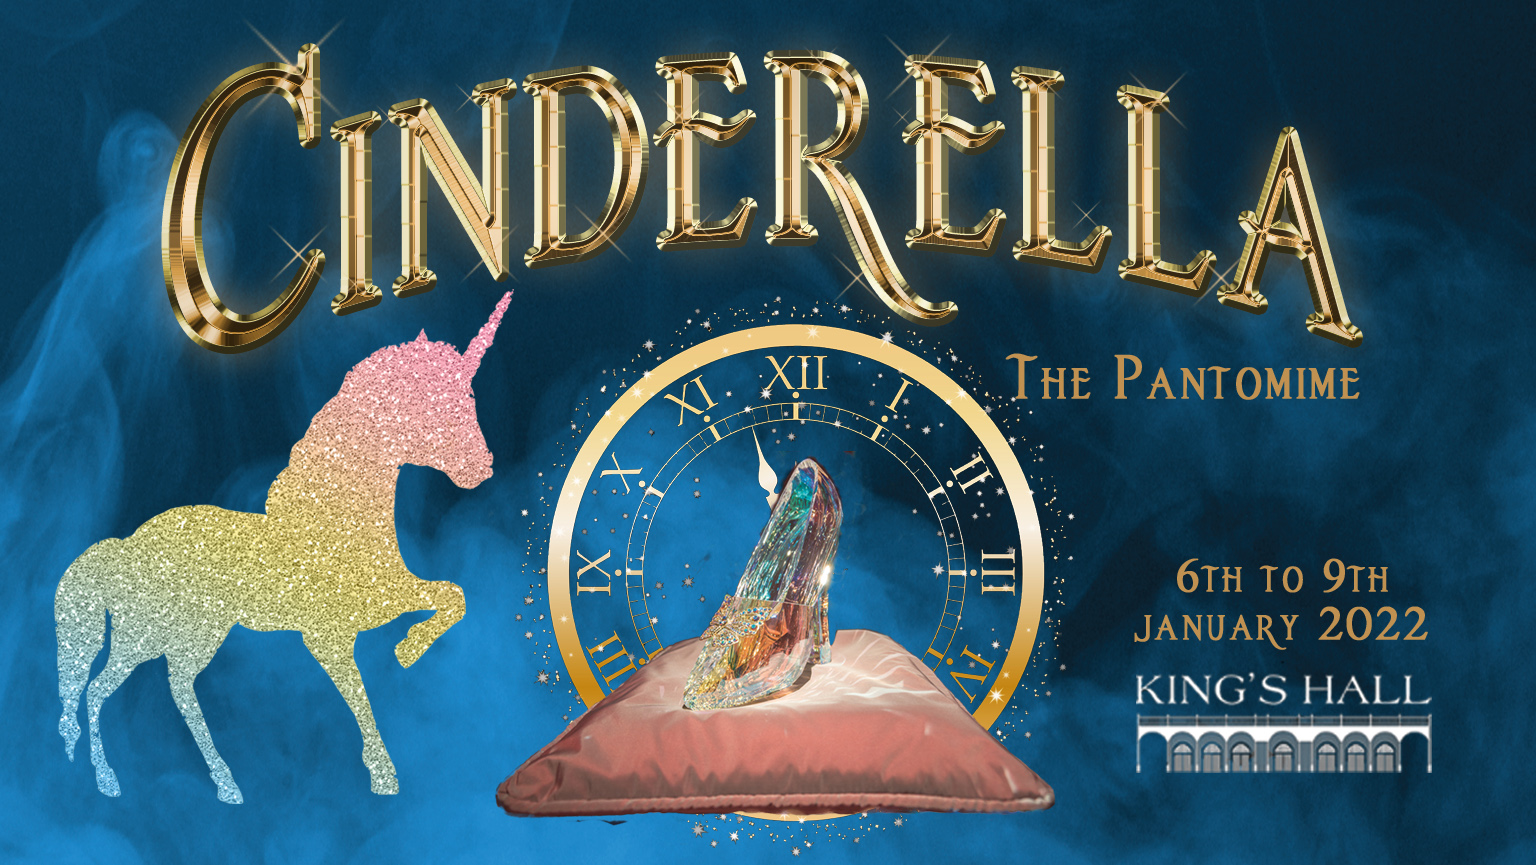 Cinderella Kings Hall Image Website